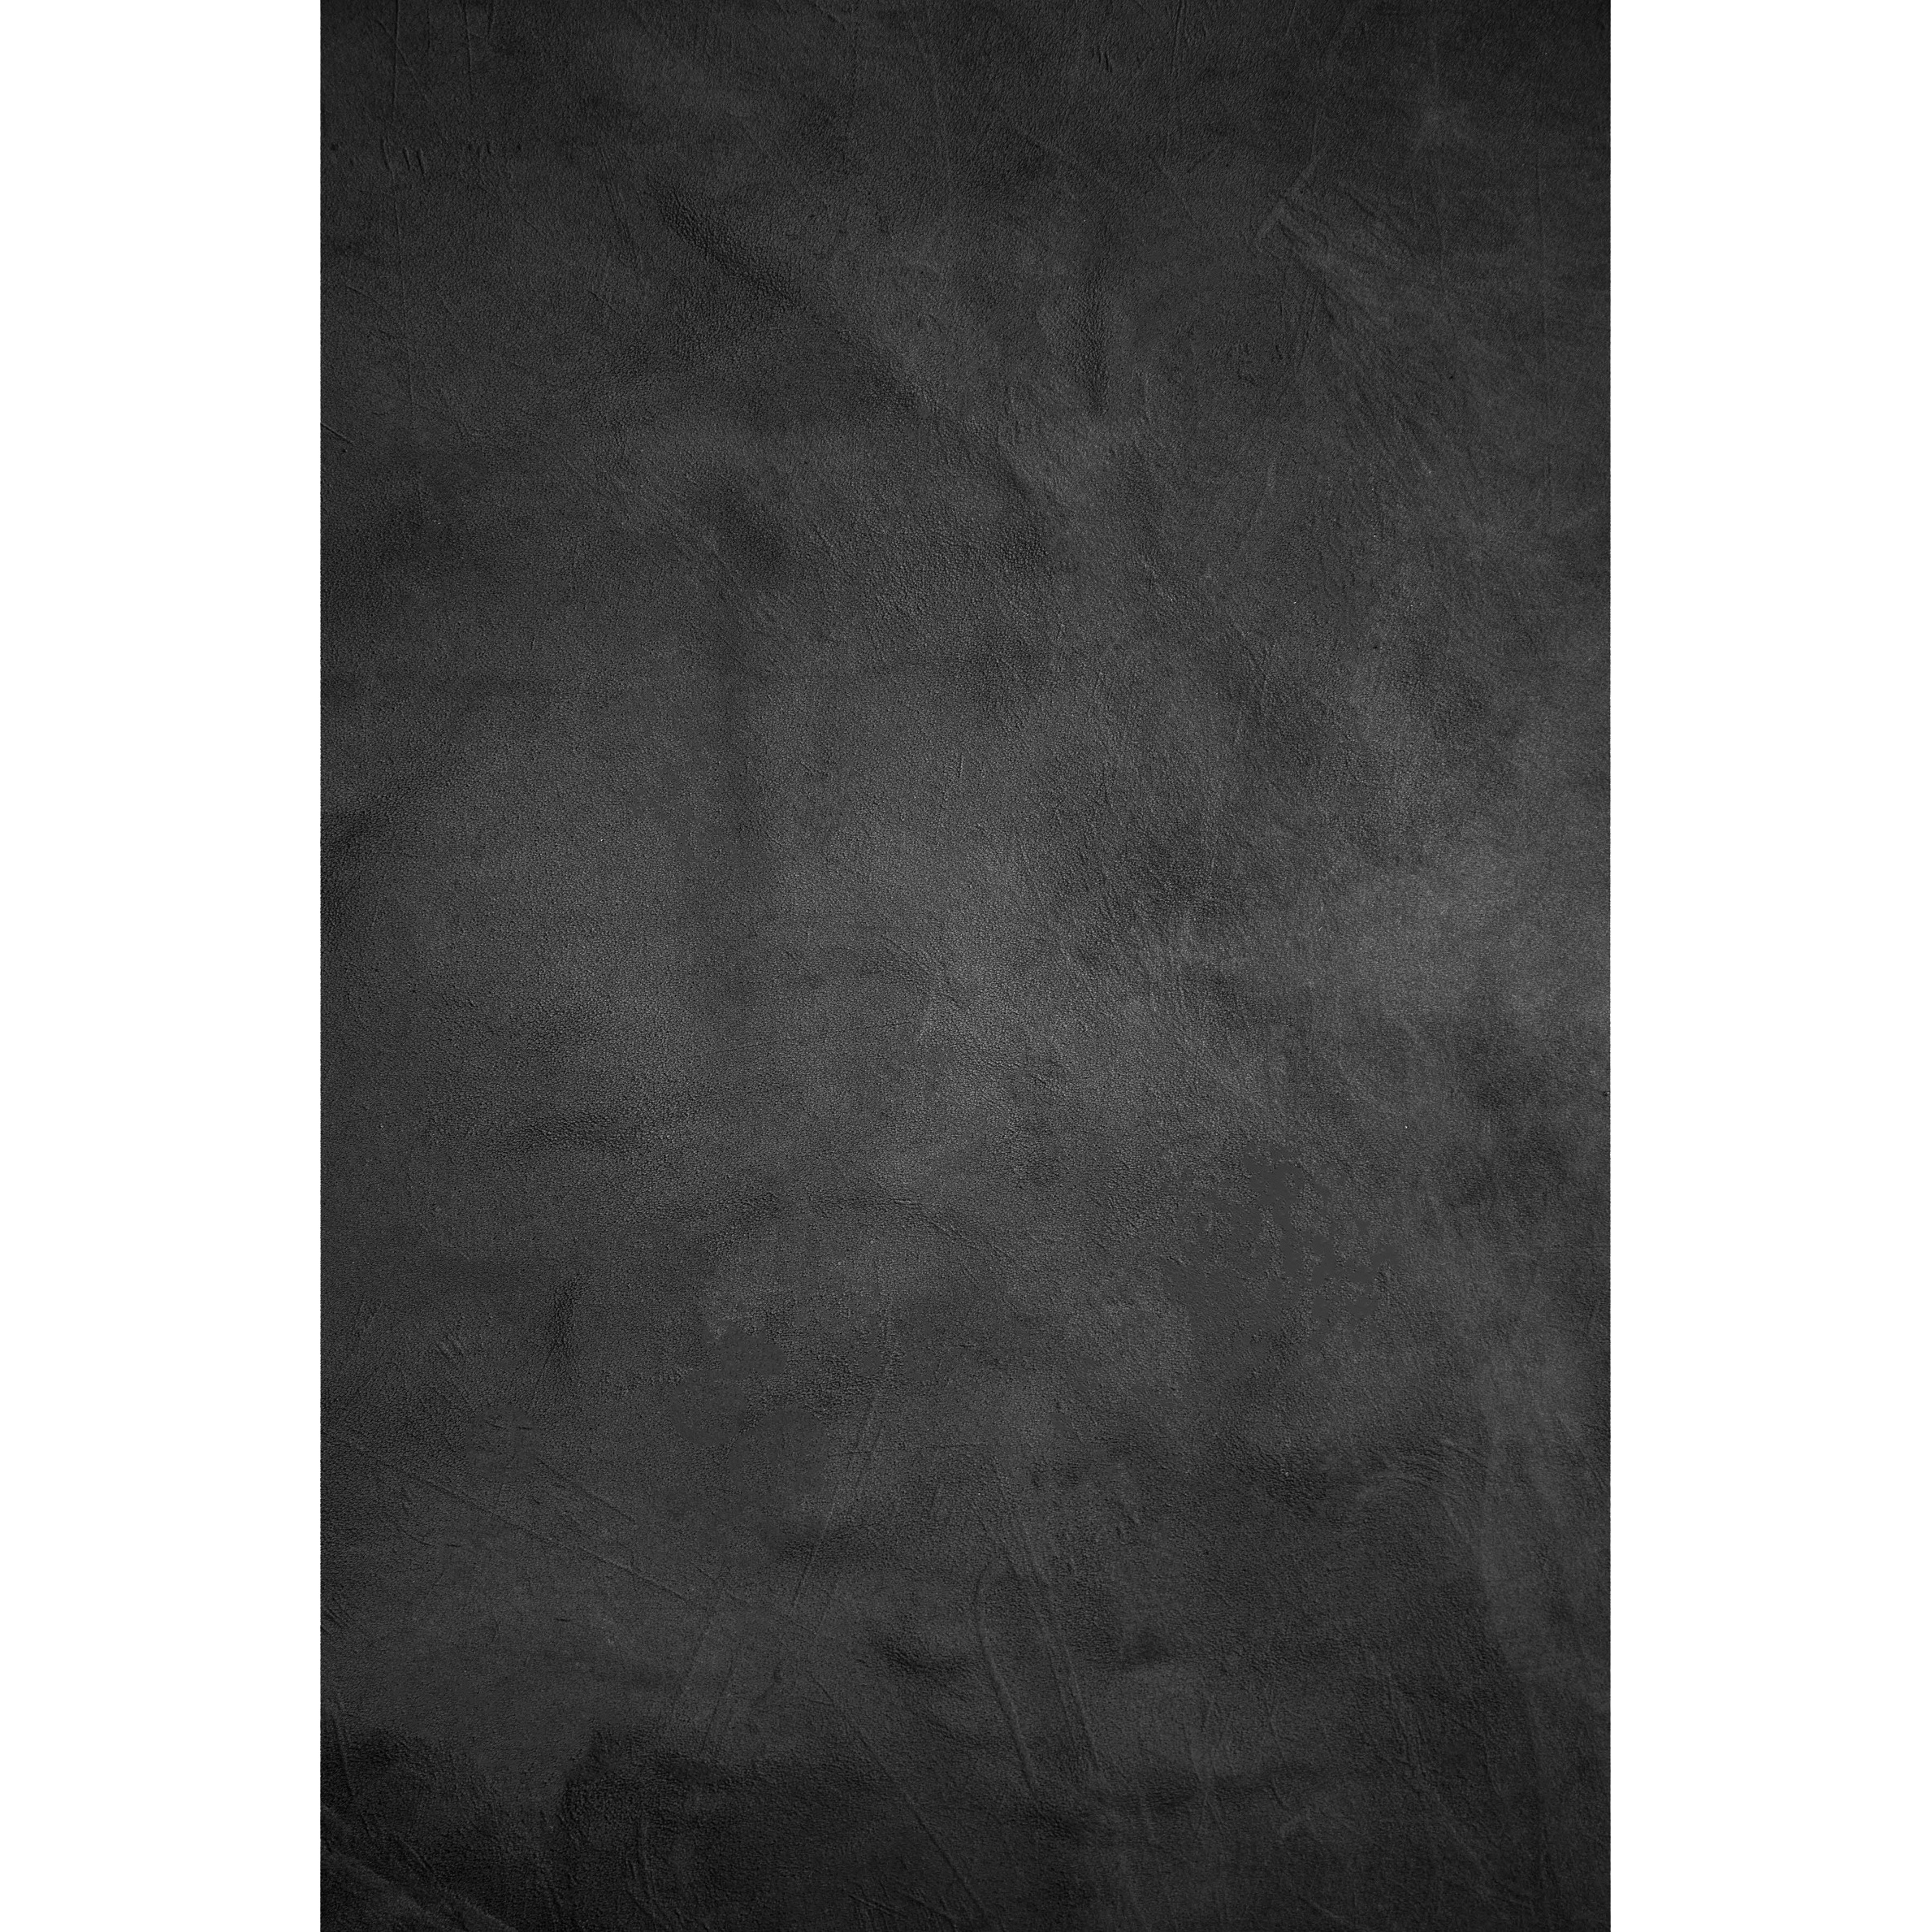 BRESSER Hintergrundstoff mit Fotomotiv 80 x 120 cm - Schwarz